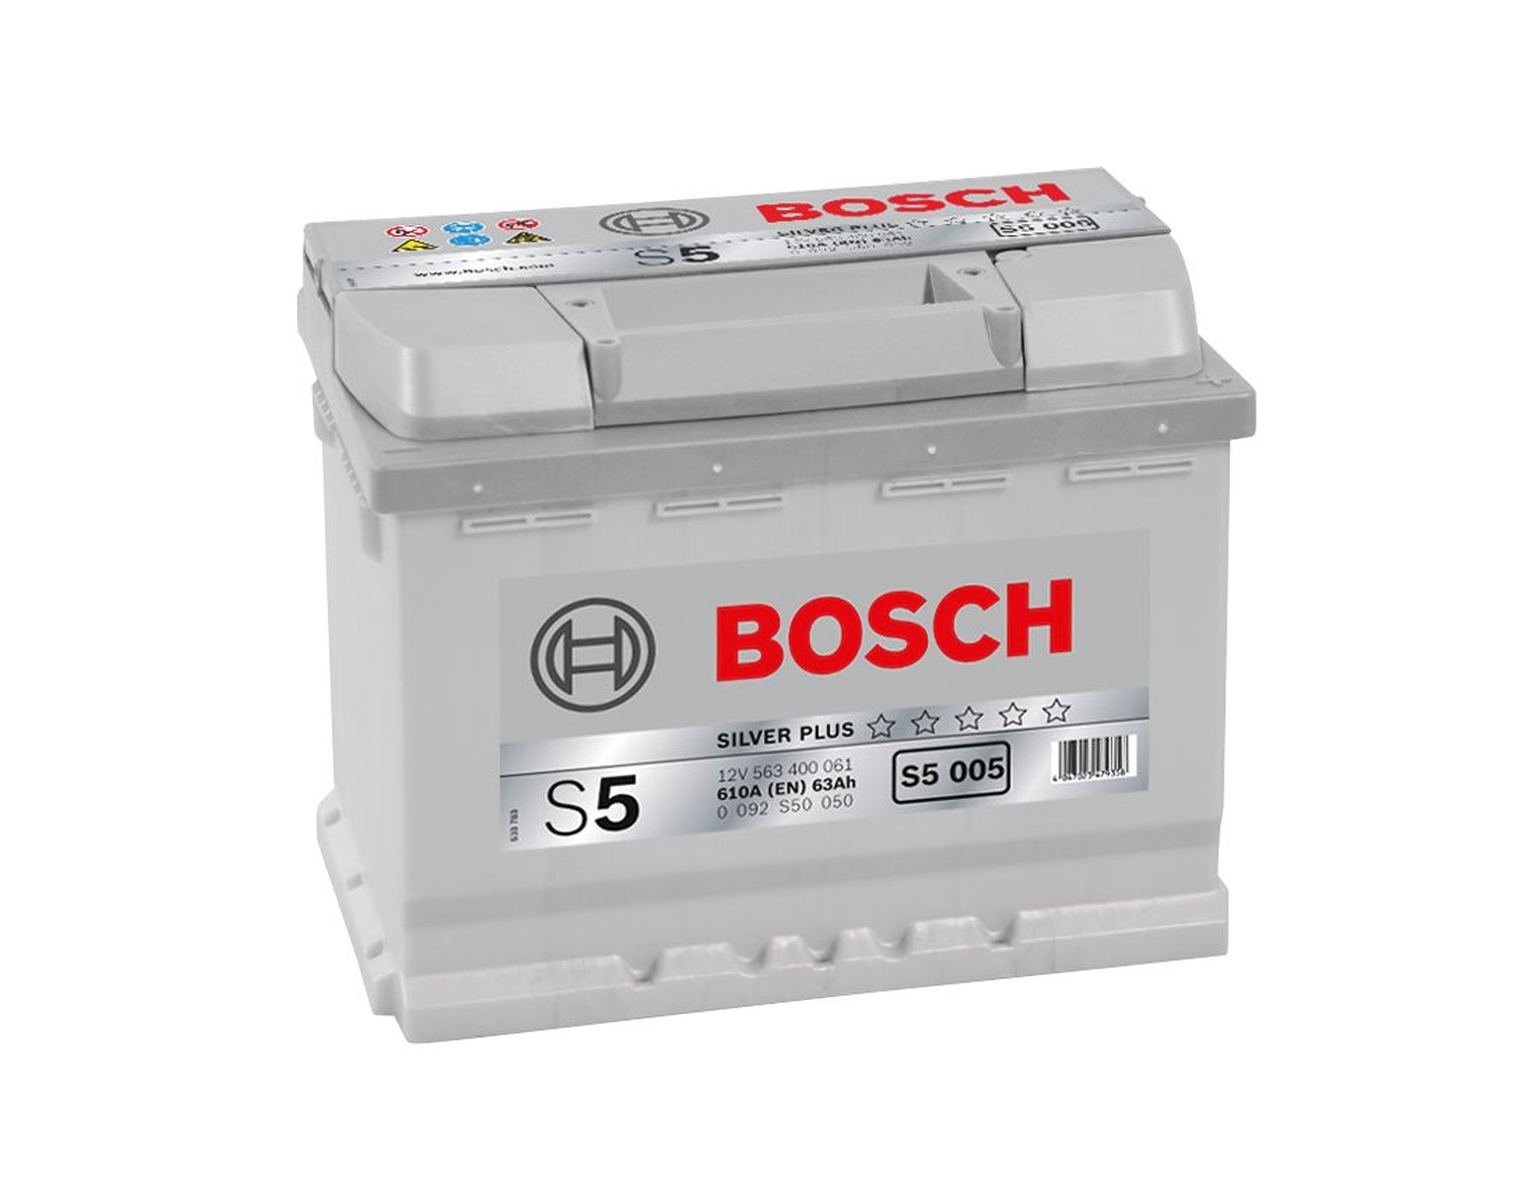 Bosch Starter-Batterie 12V 563 400 061 63Ah, S5 005 H5